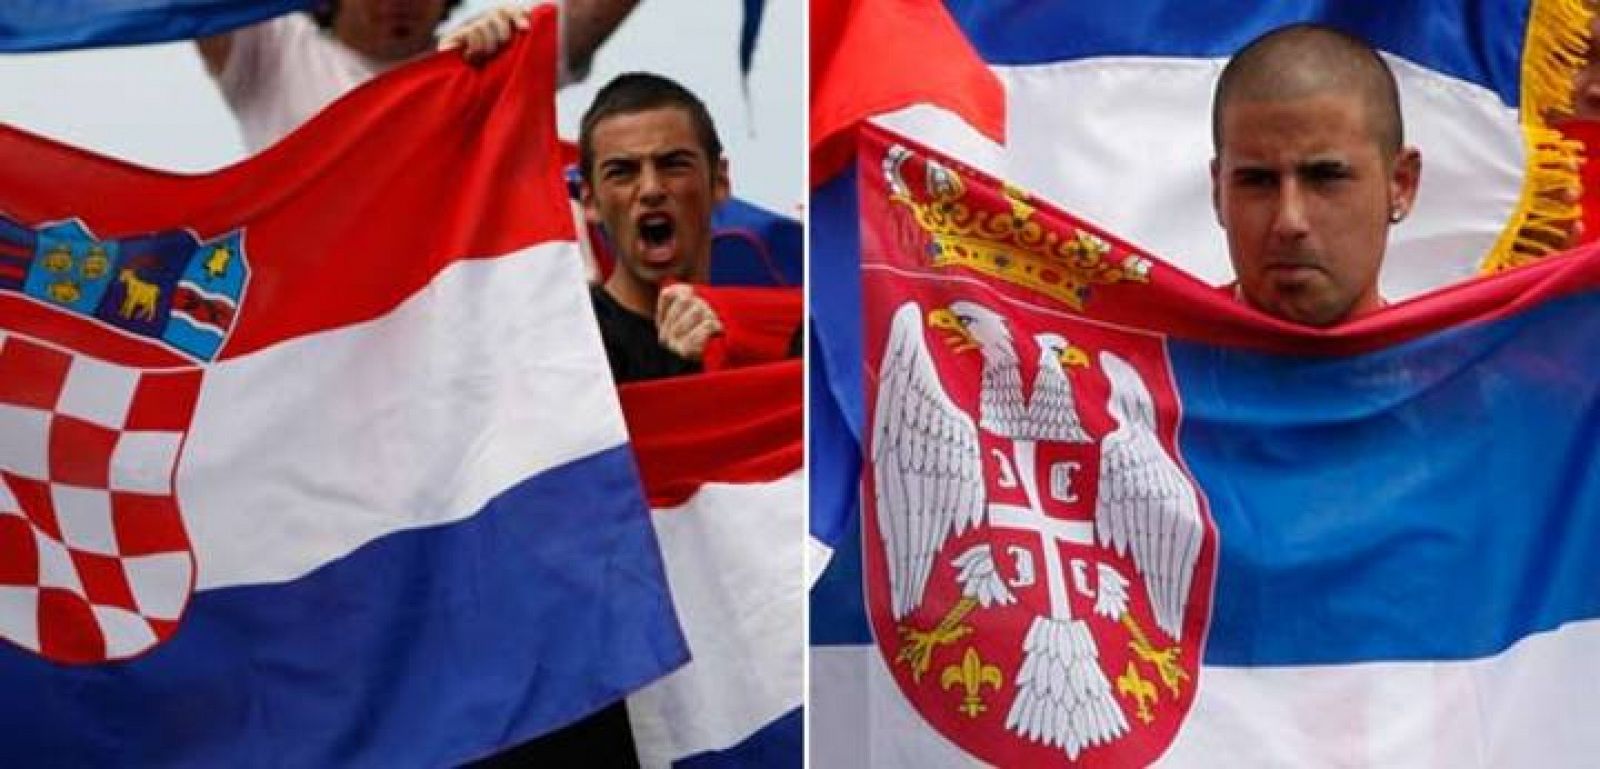 Un aficionado croata y un espectador serbio asisten al partido entre Tipsarevic y Cilic